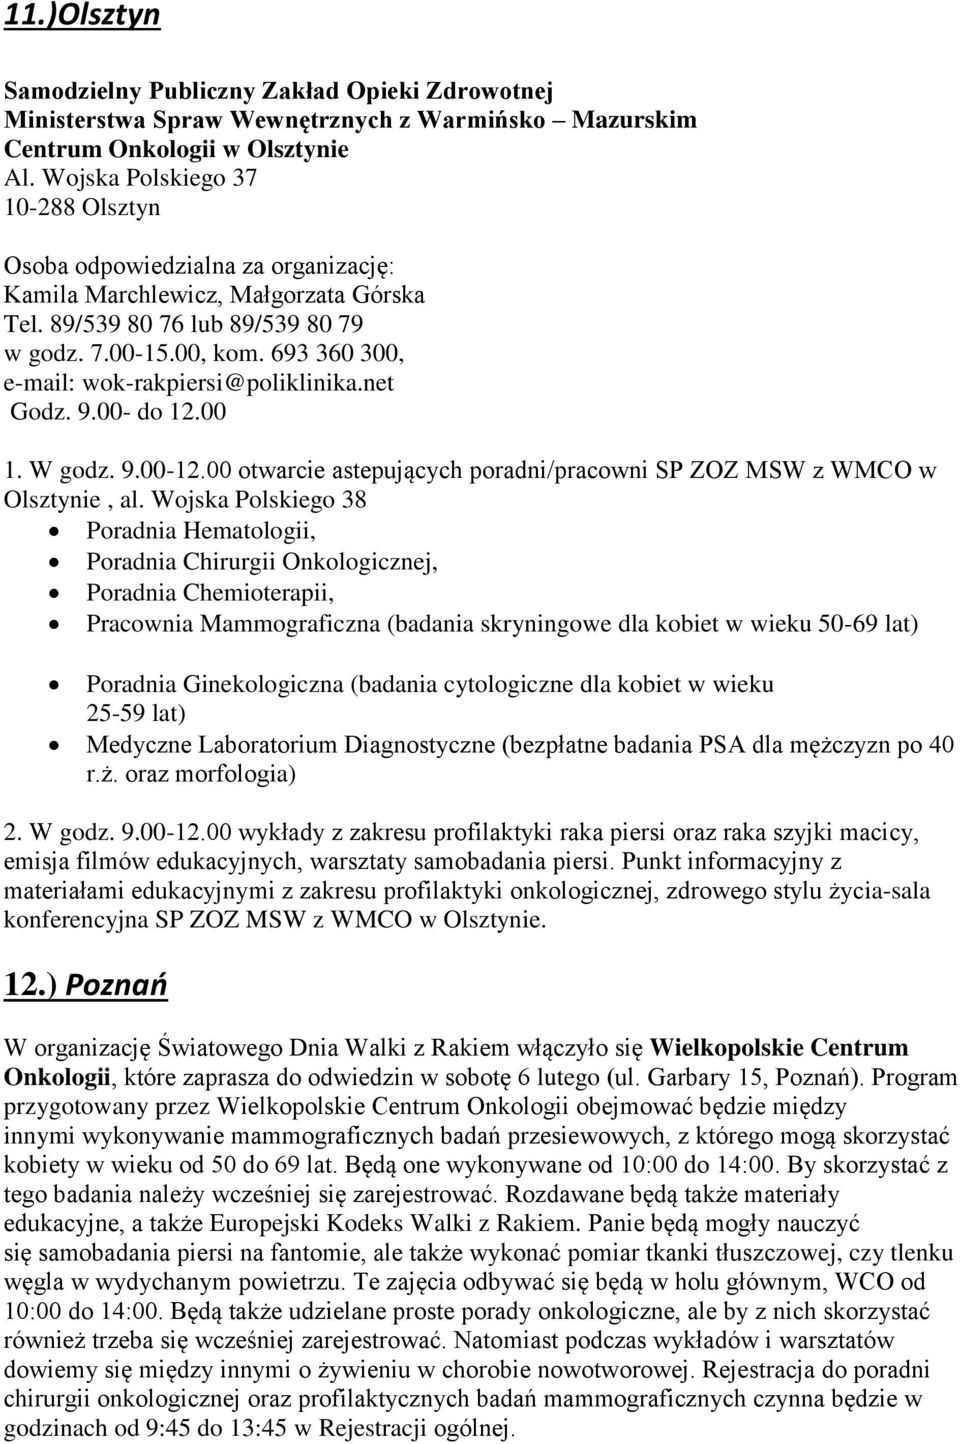 693 360 300, e-mail: wok-rakpiersi@poliklinika.net Godz. 9.00- do 12.00 1. W godz. 9.00-12.00 otwarcie astepujących poradni/pracowni SP ZOZ MSW z WMCO w Olsztynie, al.